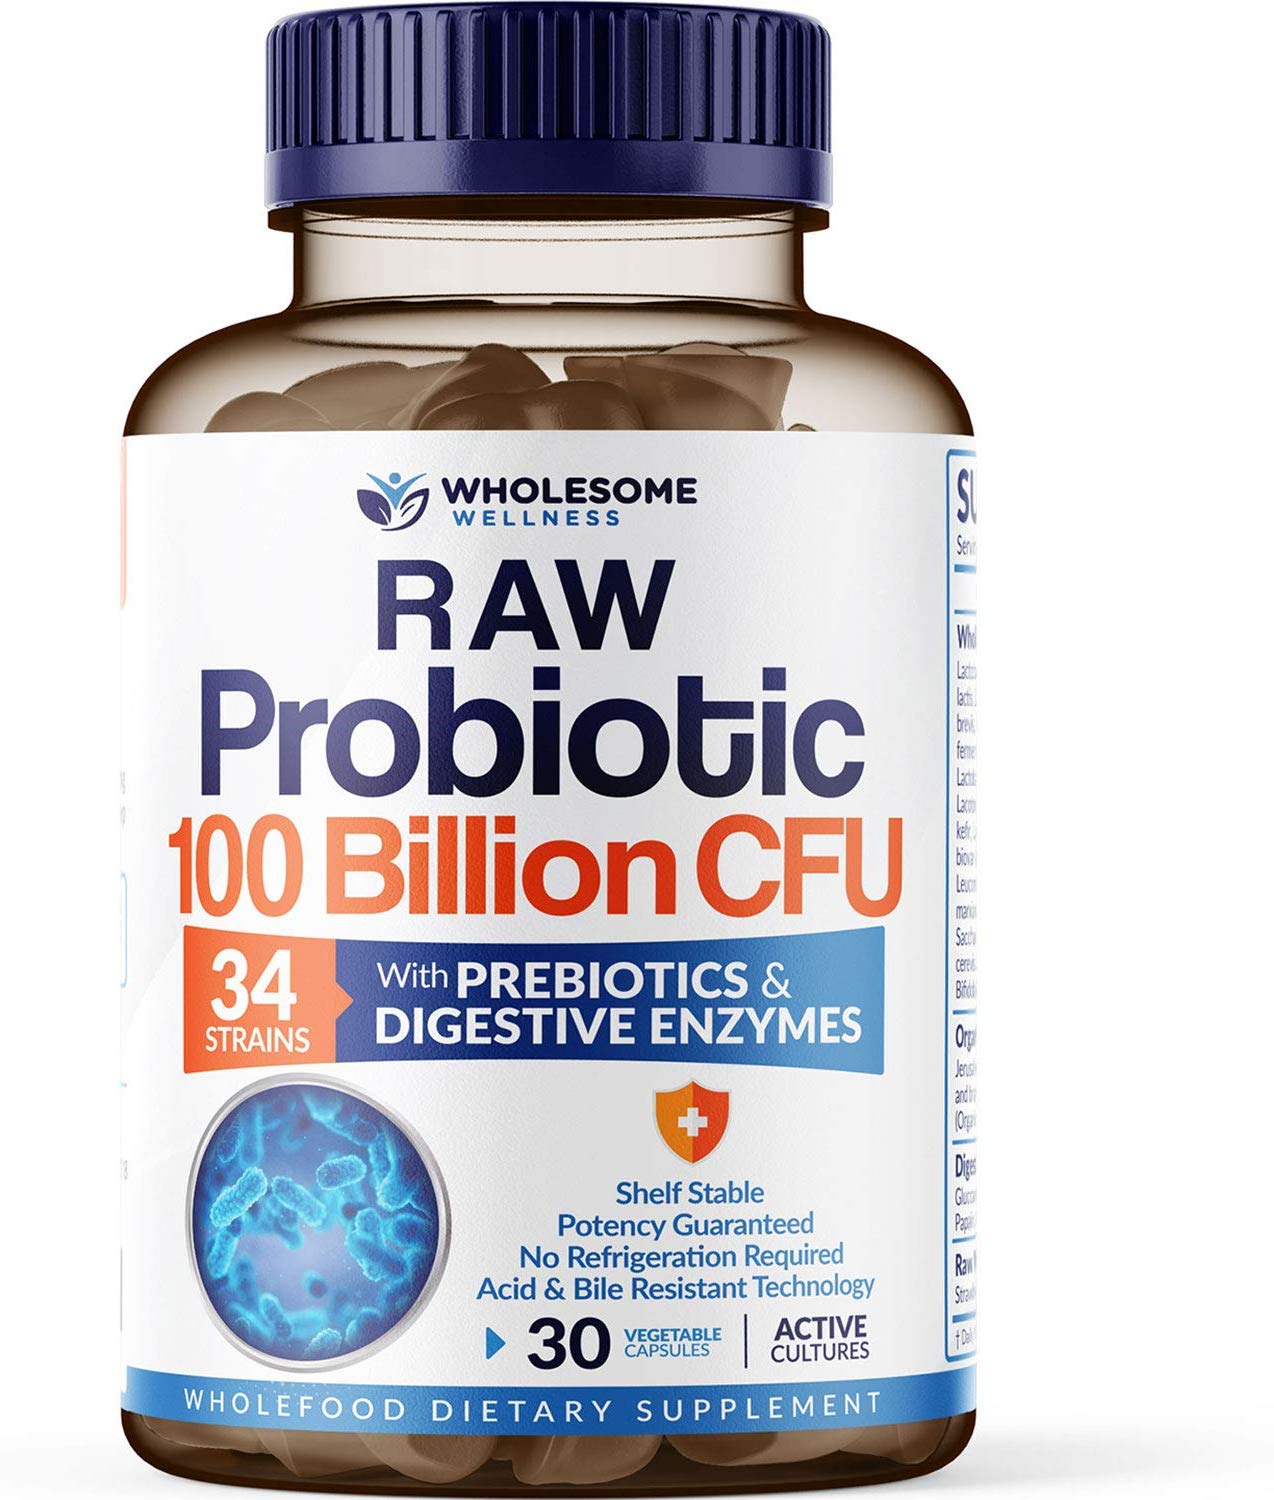 Best Probiotic [2020] Top Rated Probiotics Supplements ...